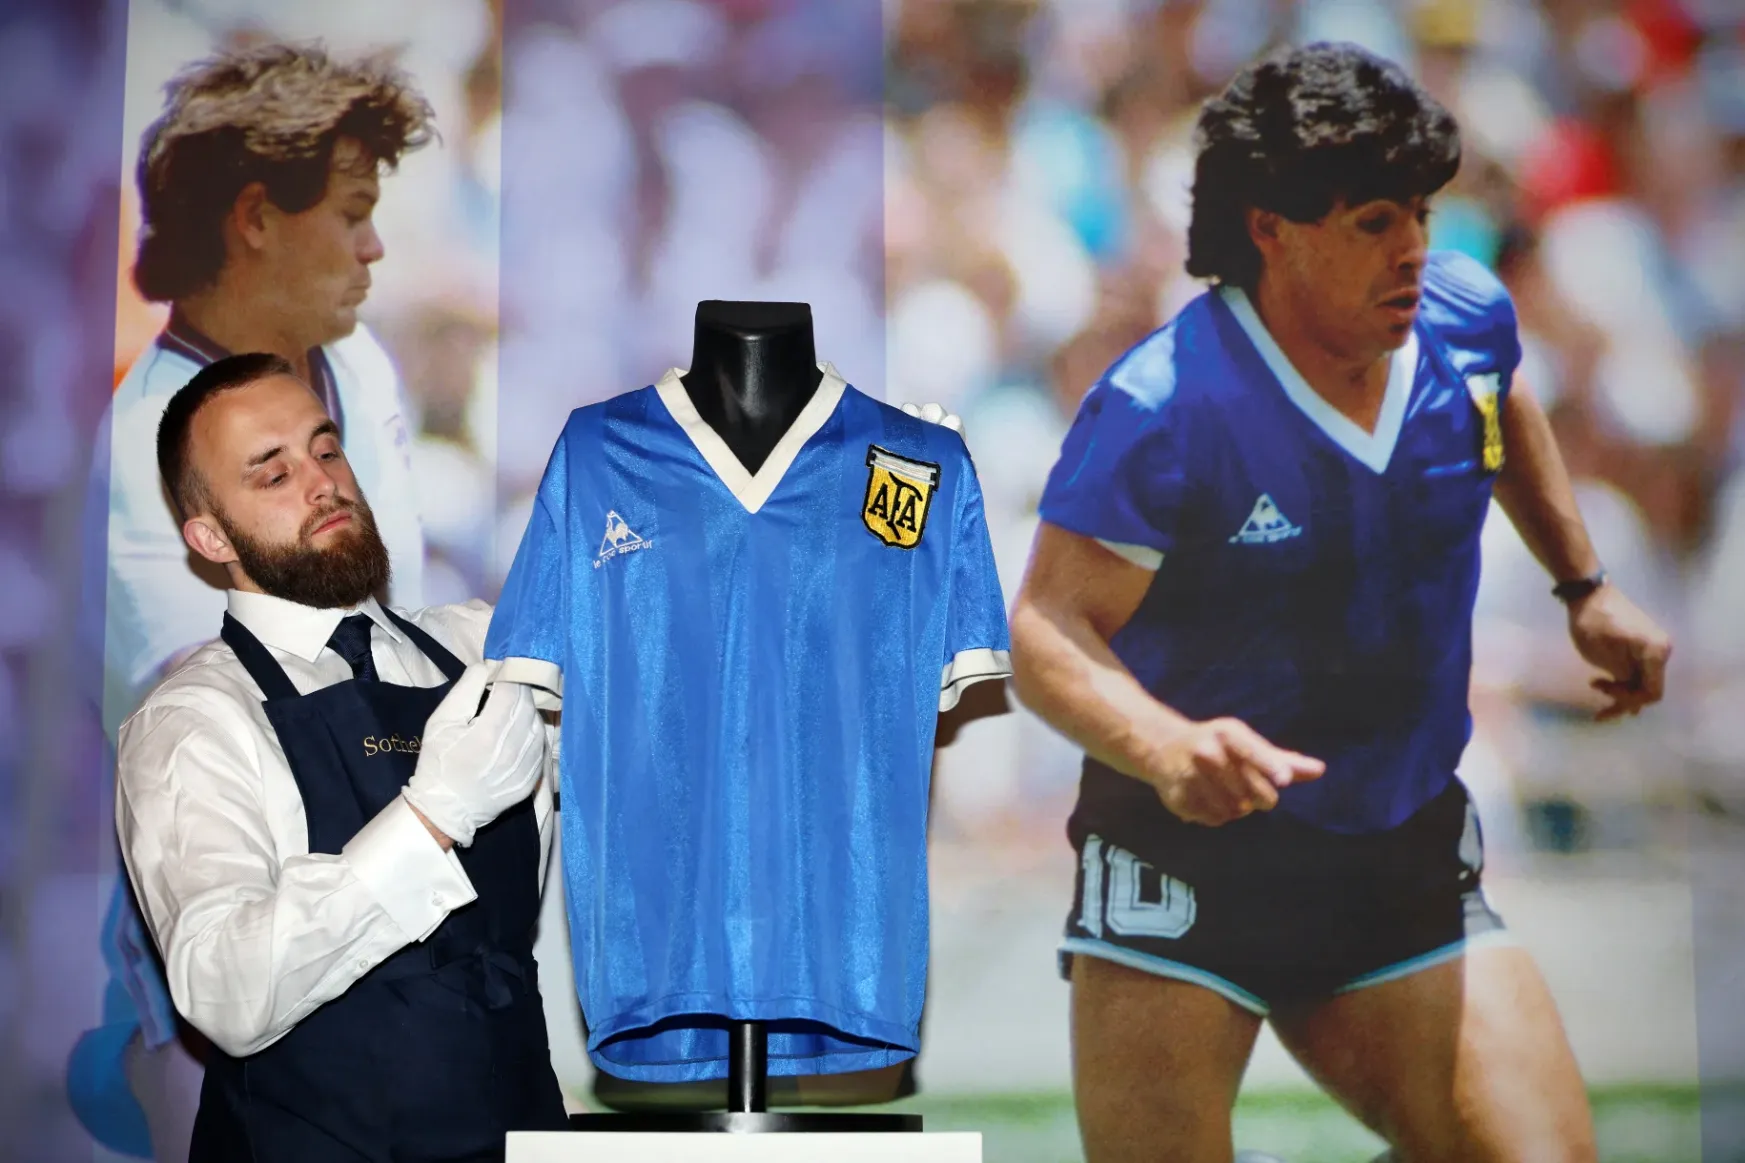 Valaki 3,3 milliárd forintnyi pénzt adott Maradona legendás mezéért